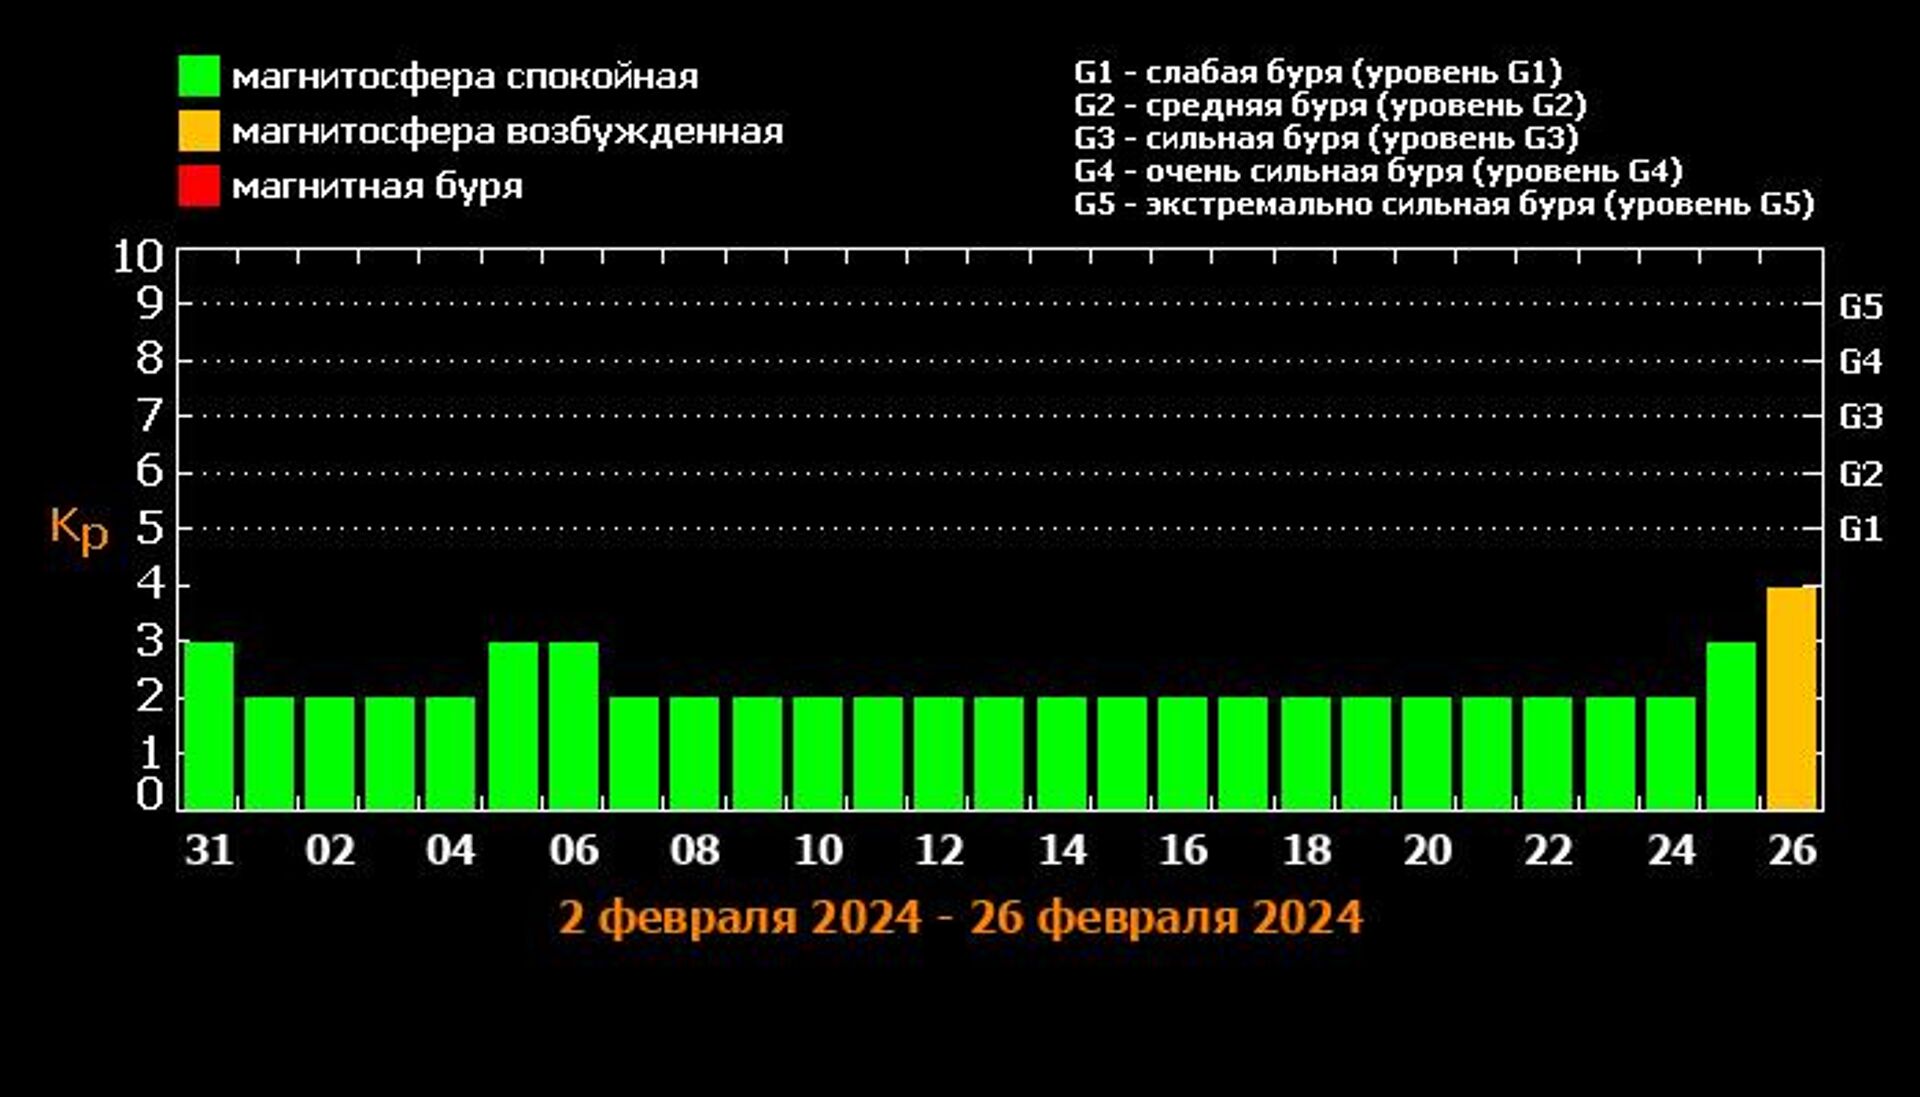 Прогноз магнитных бурь на 2-26 февраля 2024 по данным сайта Лаборатории солнечной астрономии и ИКИ и ИСЗФ - Sputnik Армения, 1920, 30.01.2024